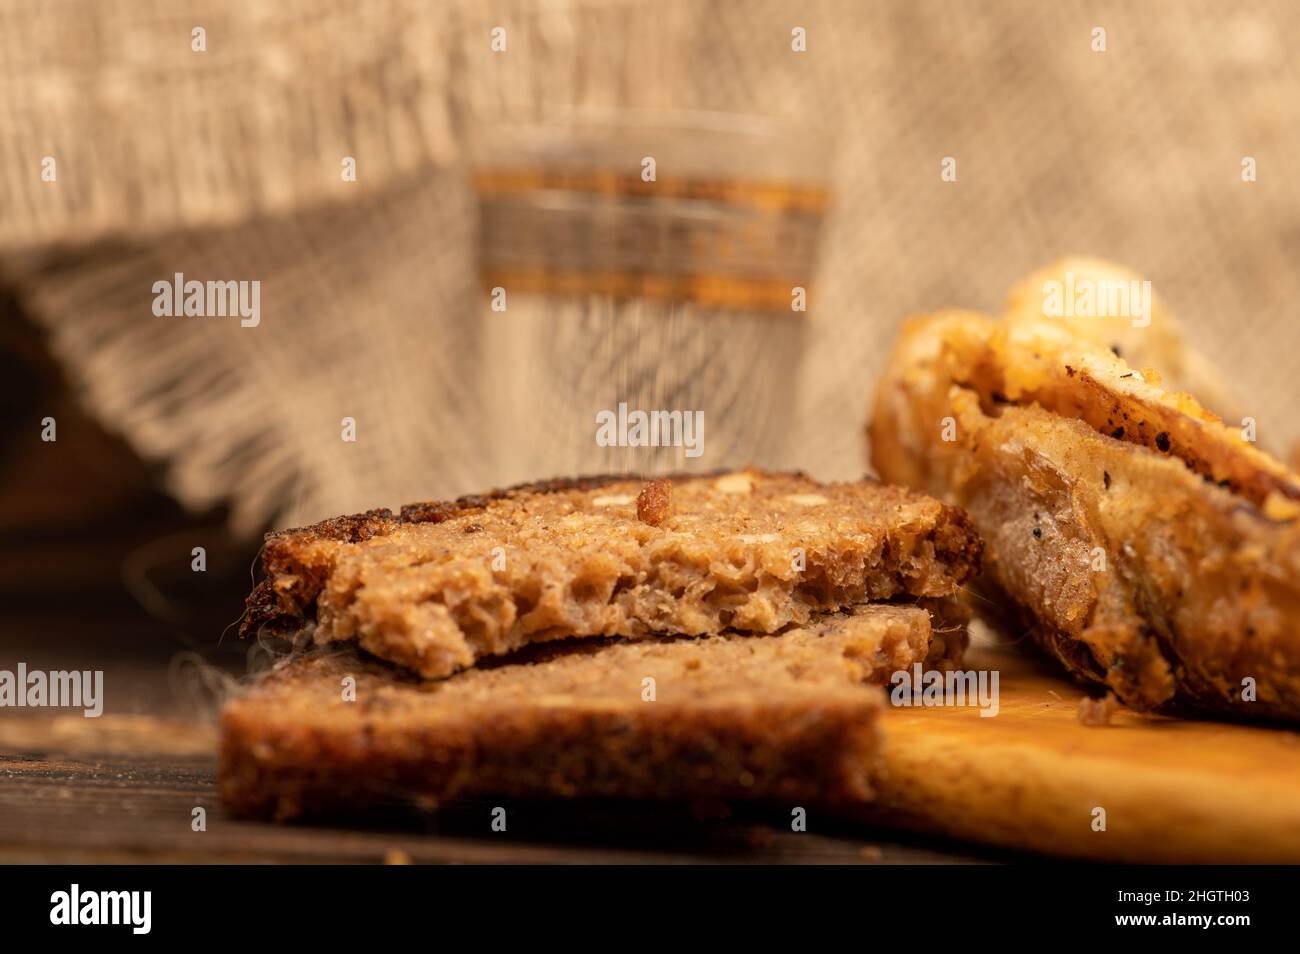 Un petit poisson frit sur une planche de bois, des morceaux de pain et un verre de vodka, gros plan, sélectif foyer Banque D'Images